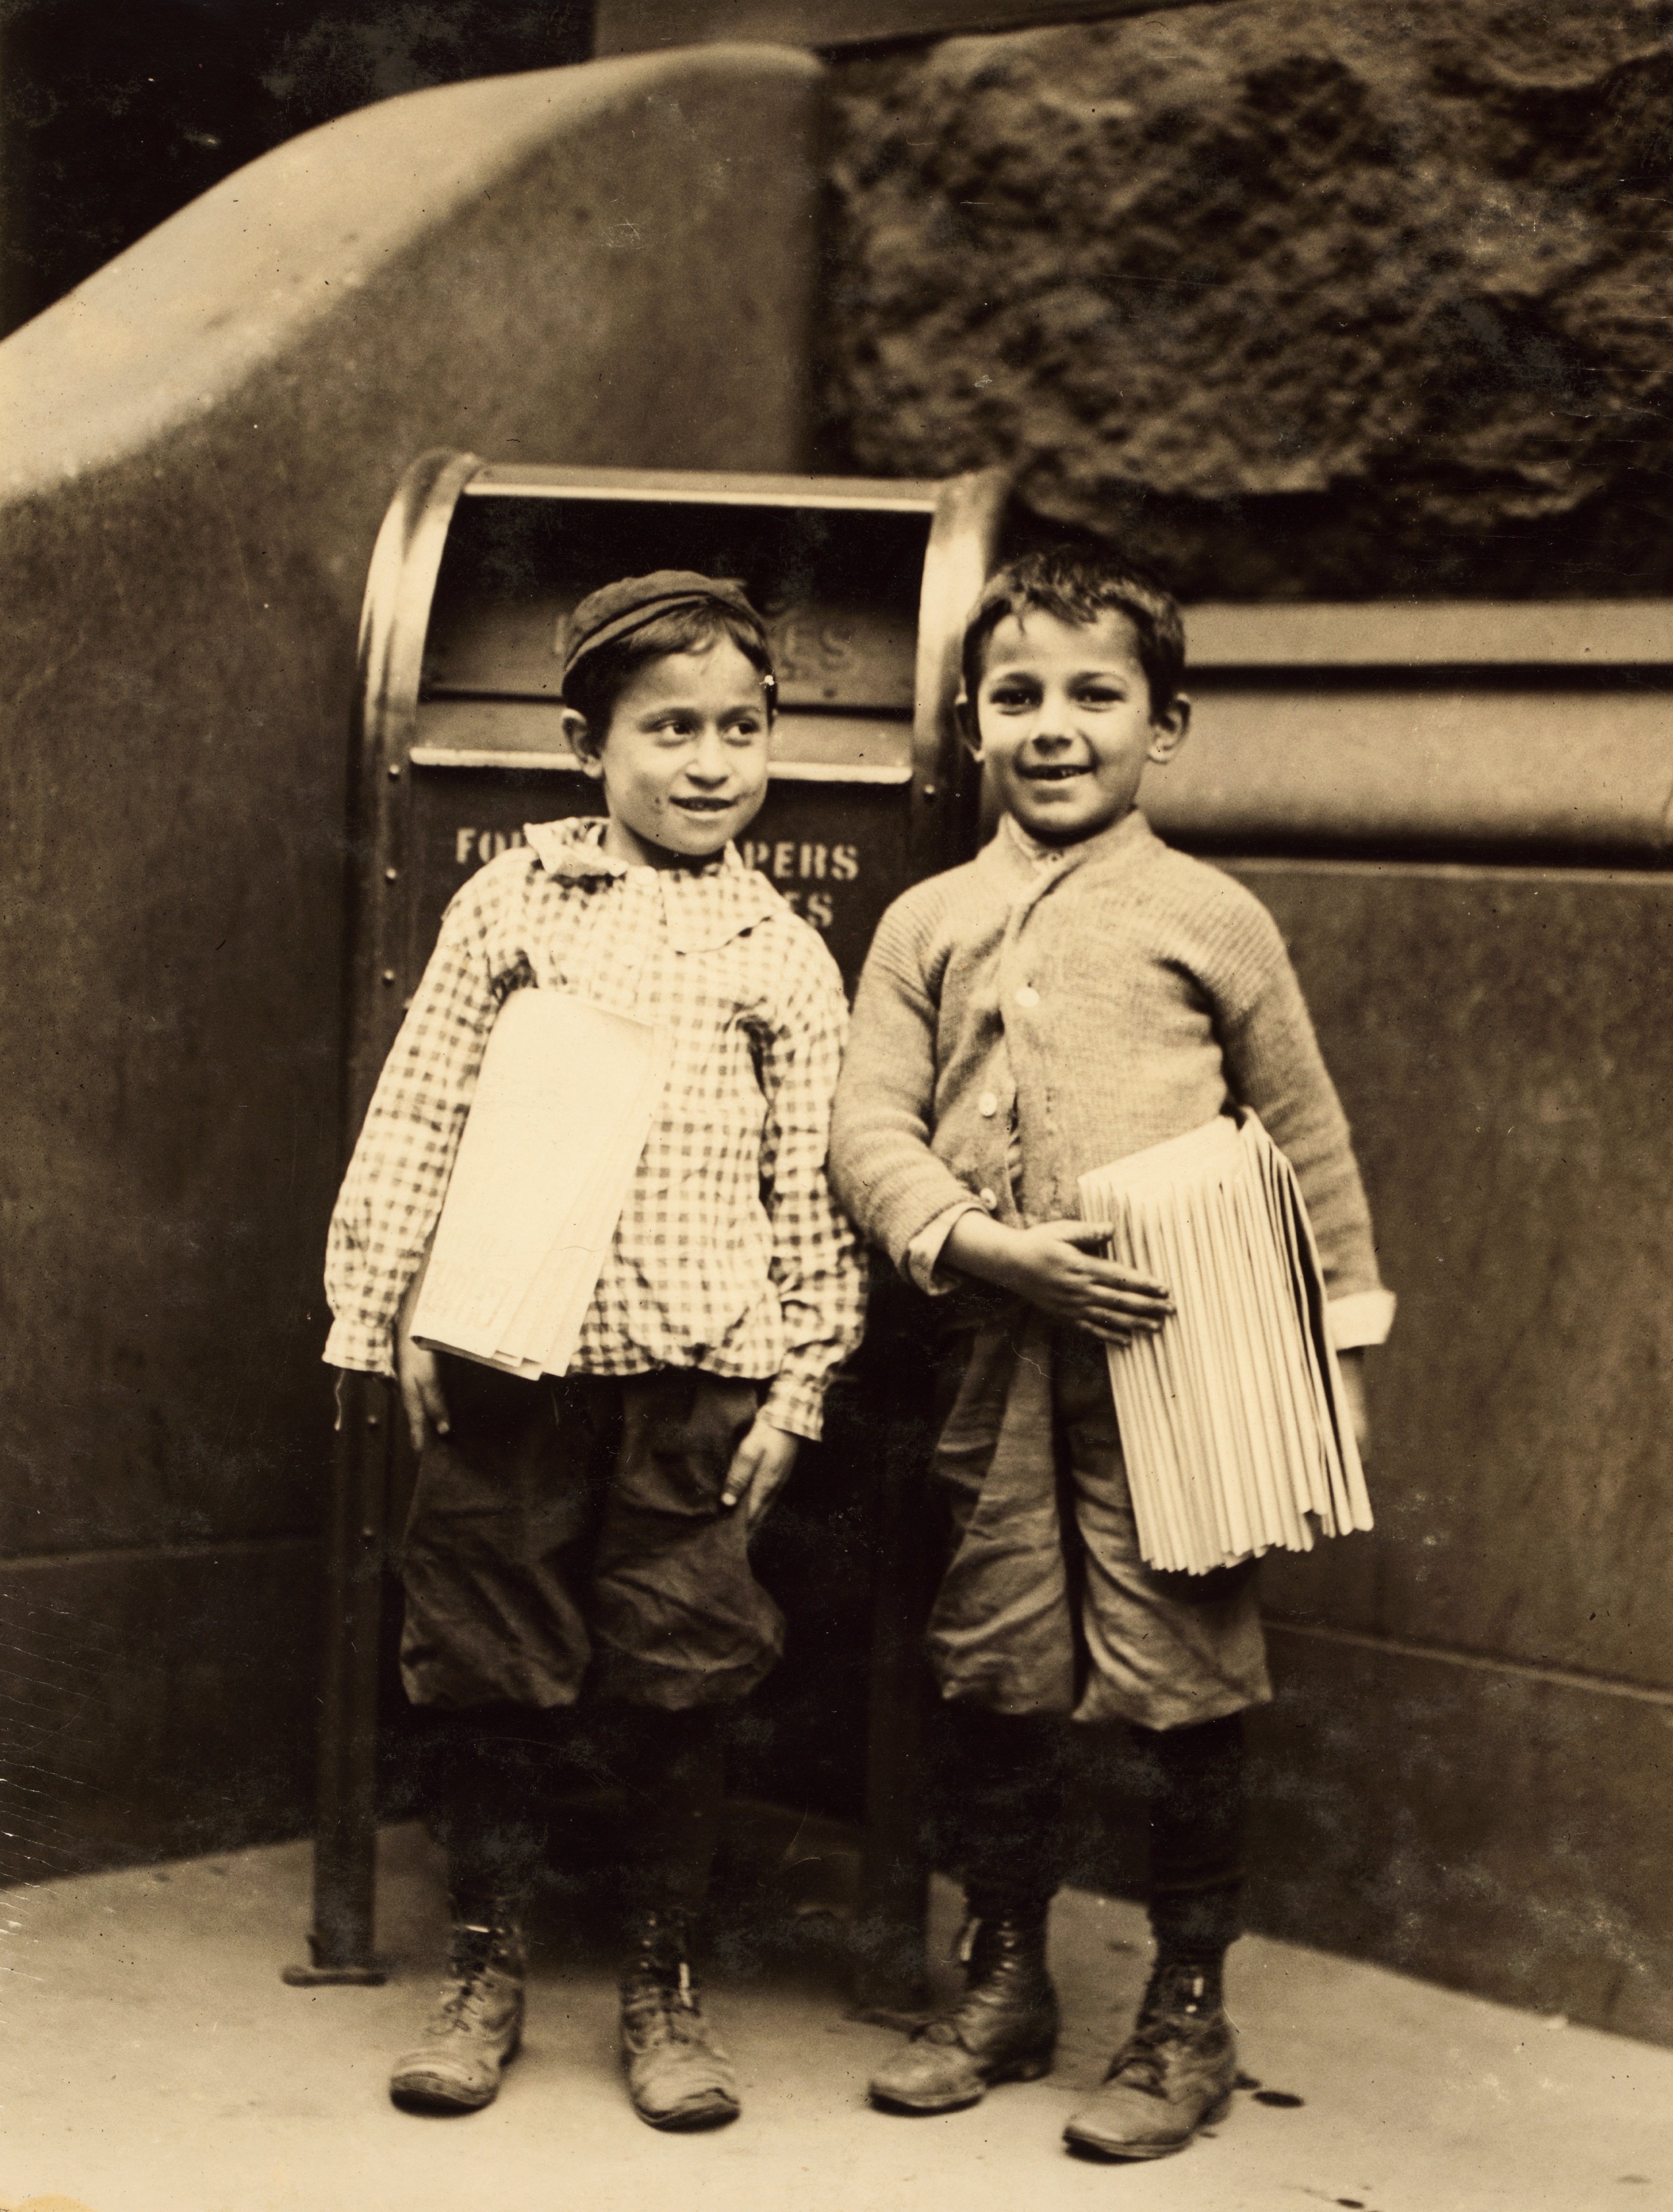 Lewis Hine, Willie Cohen and Max Rafalovizht, 8 years of age, newsboys, Philadelphia, 1910 (cropped)